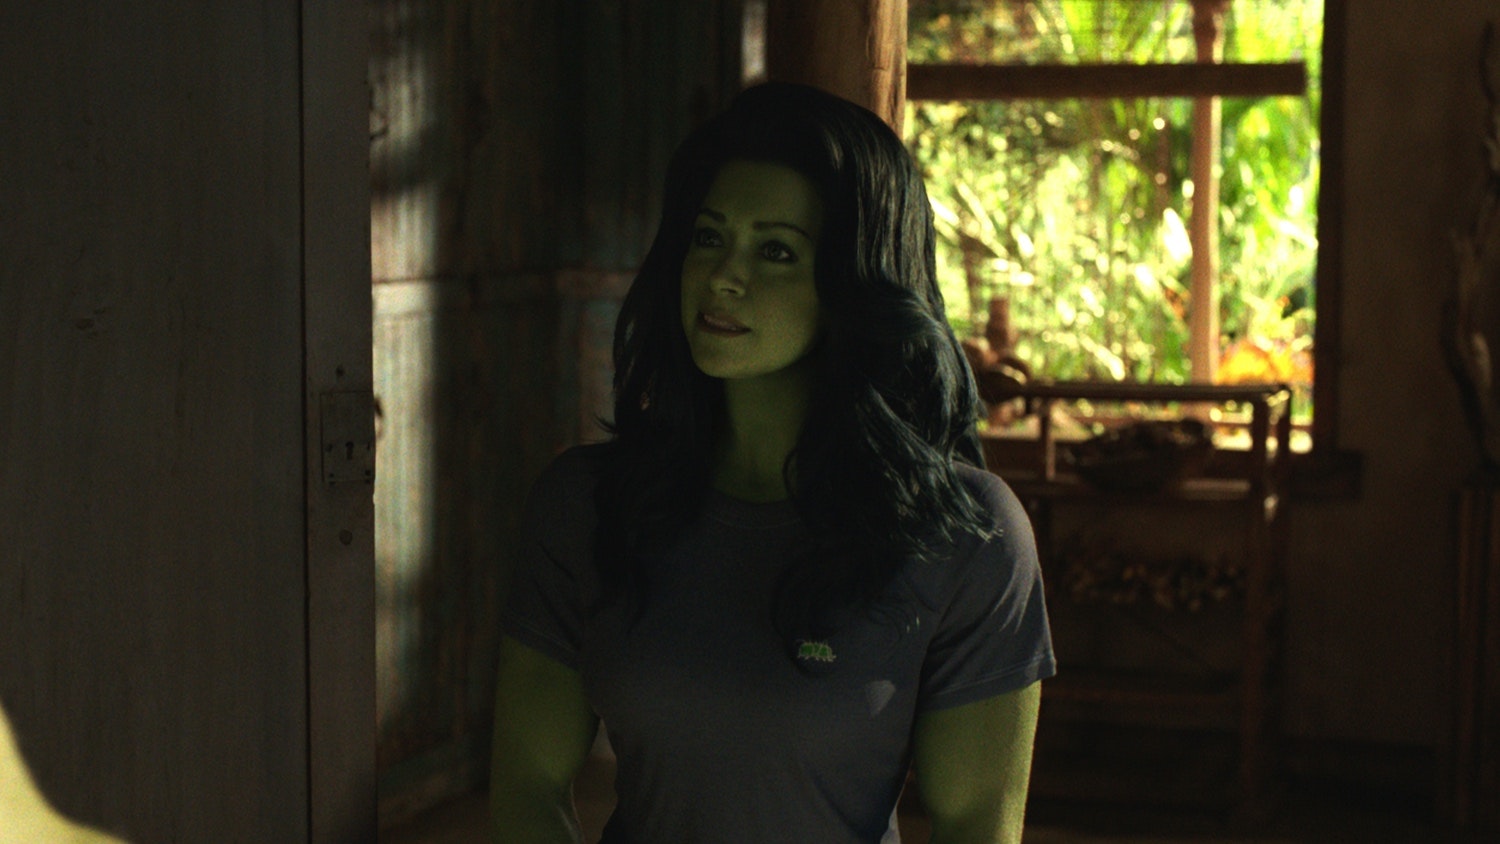 She-Hulk': Ginger Gonzaga Joins Disney+ Marvel Series – Deadline